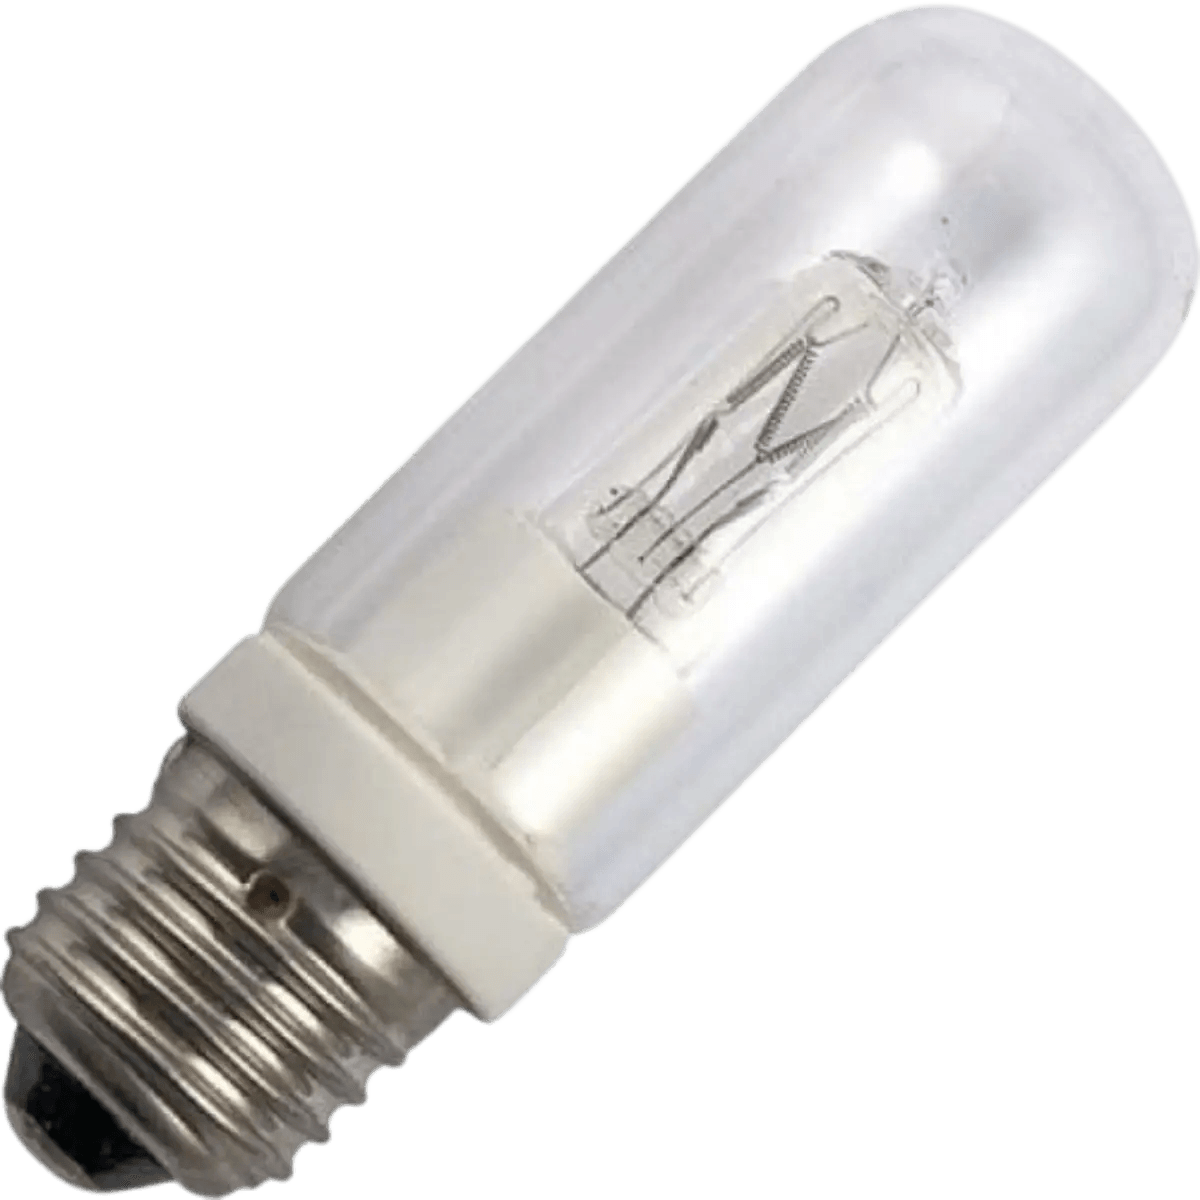 Ampoule E27 200/250W Eco Halogène